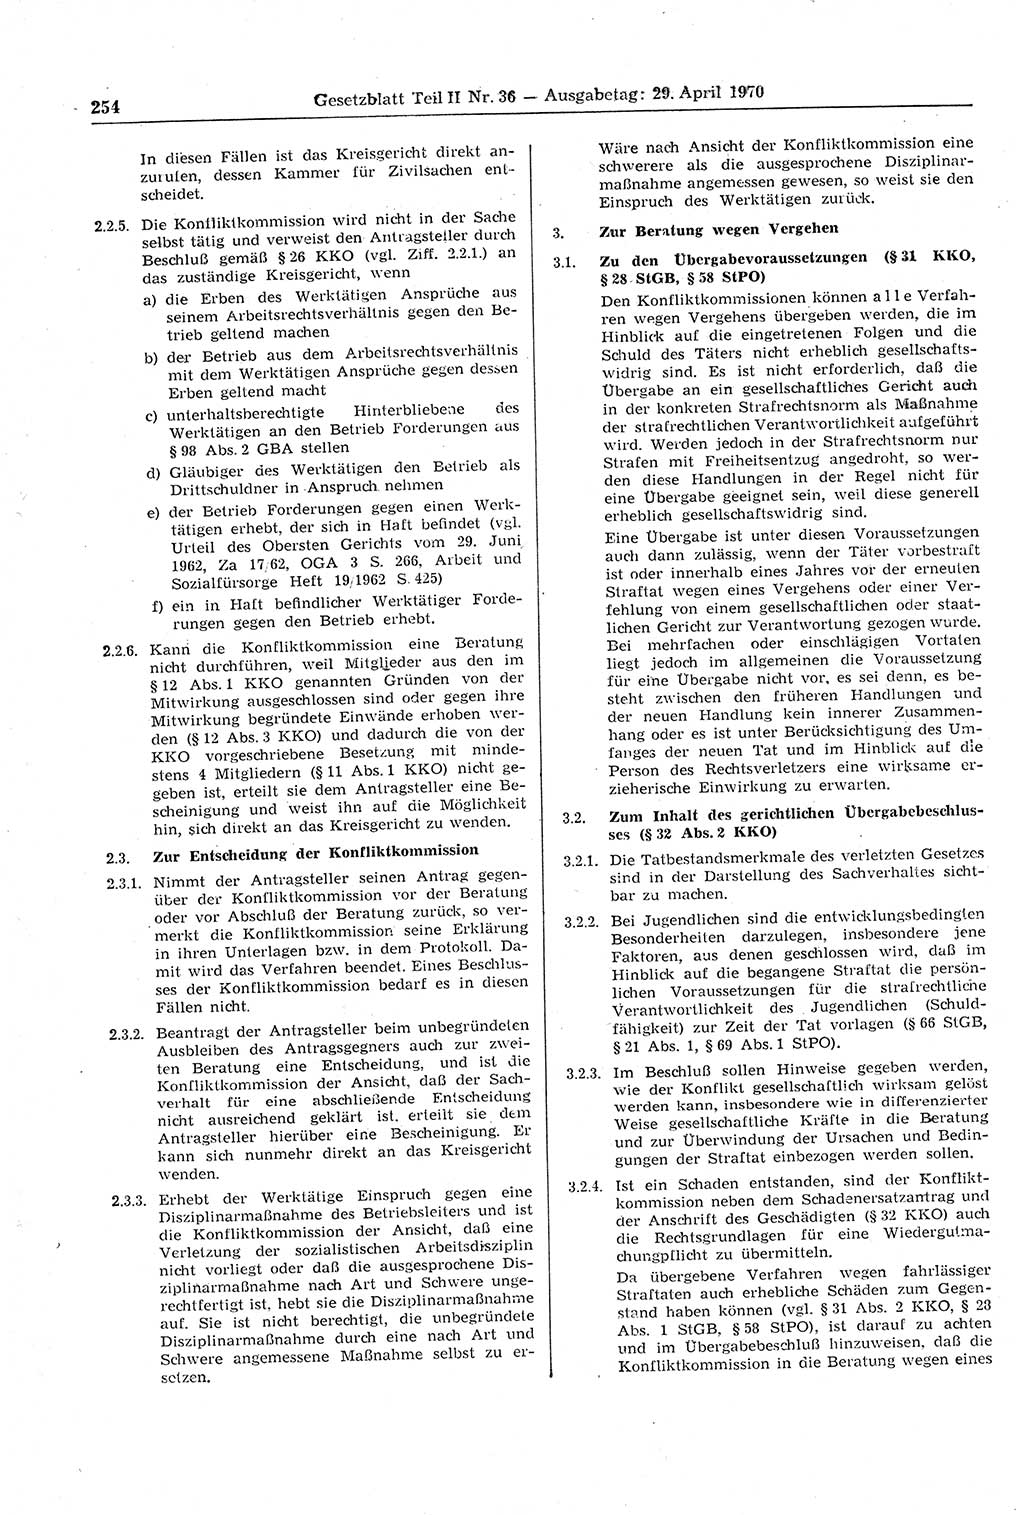 Gesetzblatt (GBl.) der Deutschen Demokratischen Republik (DDR) Teil ⅠⅠ 1970, Seite 254 (GBl. DDR ⅠⅠ 1970, S. 254)